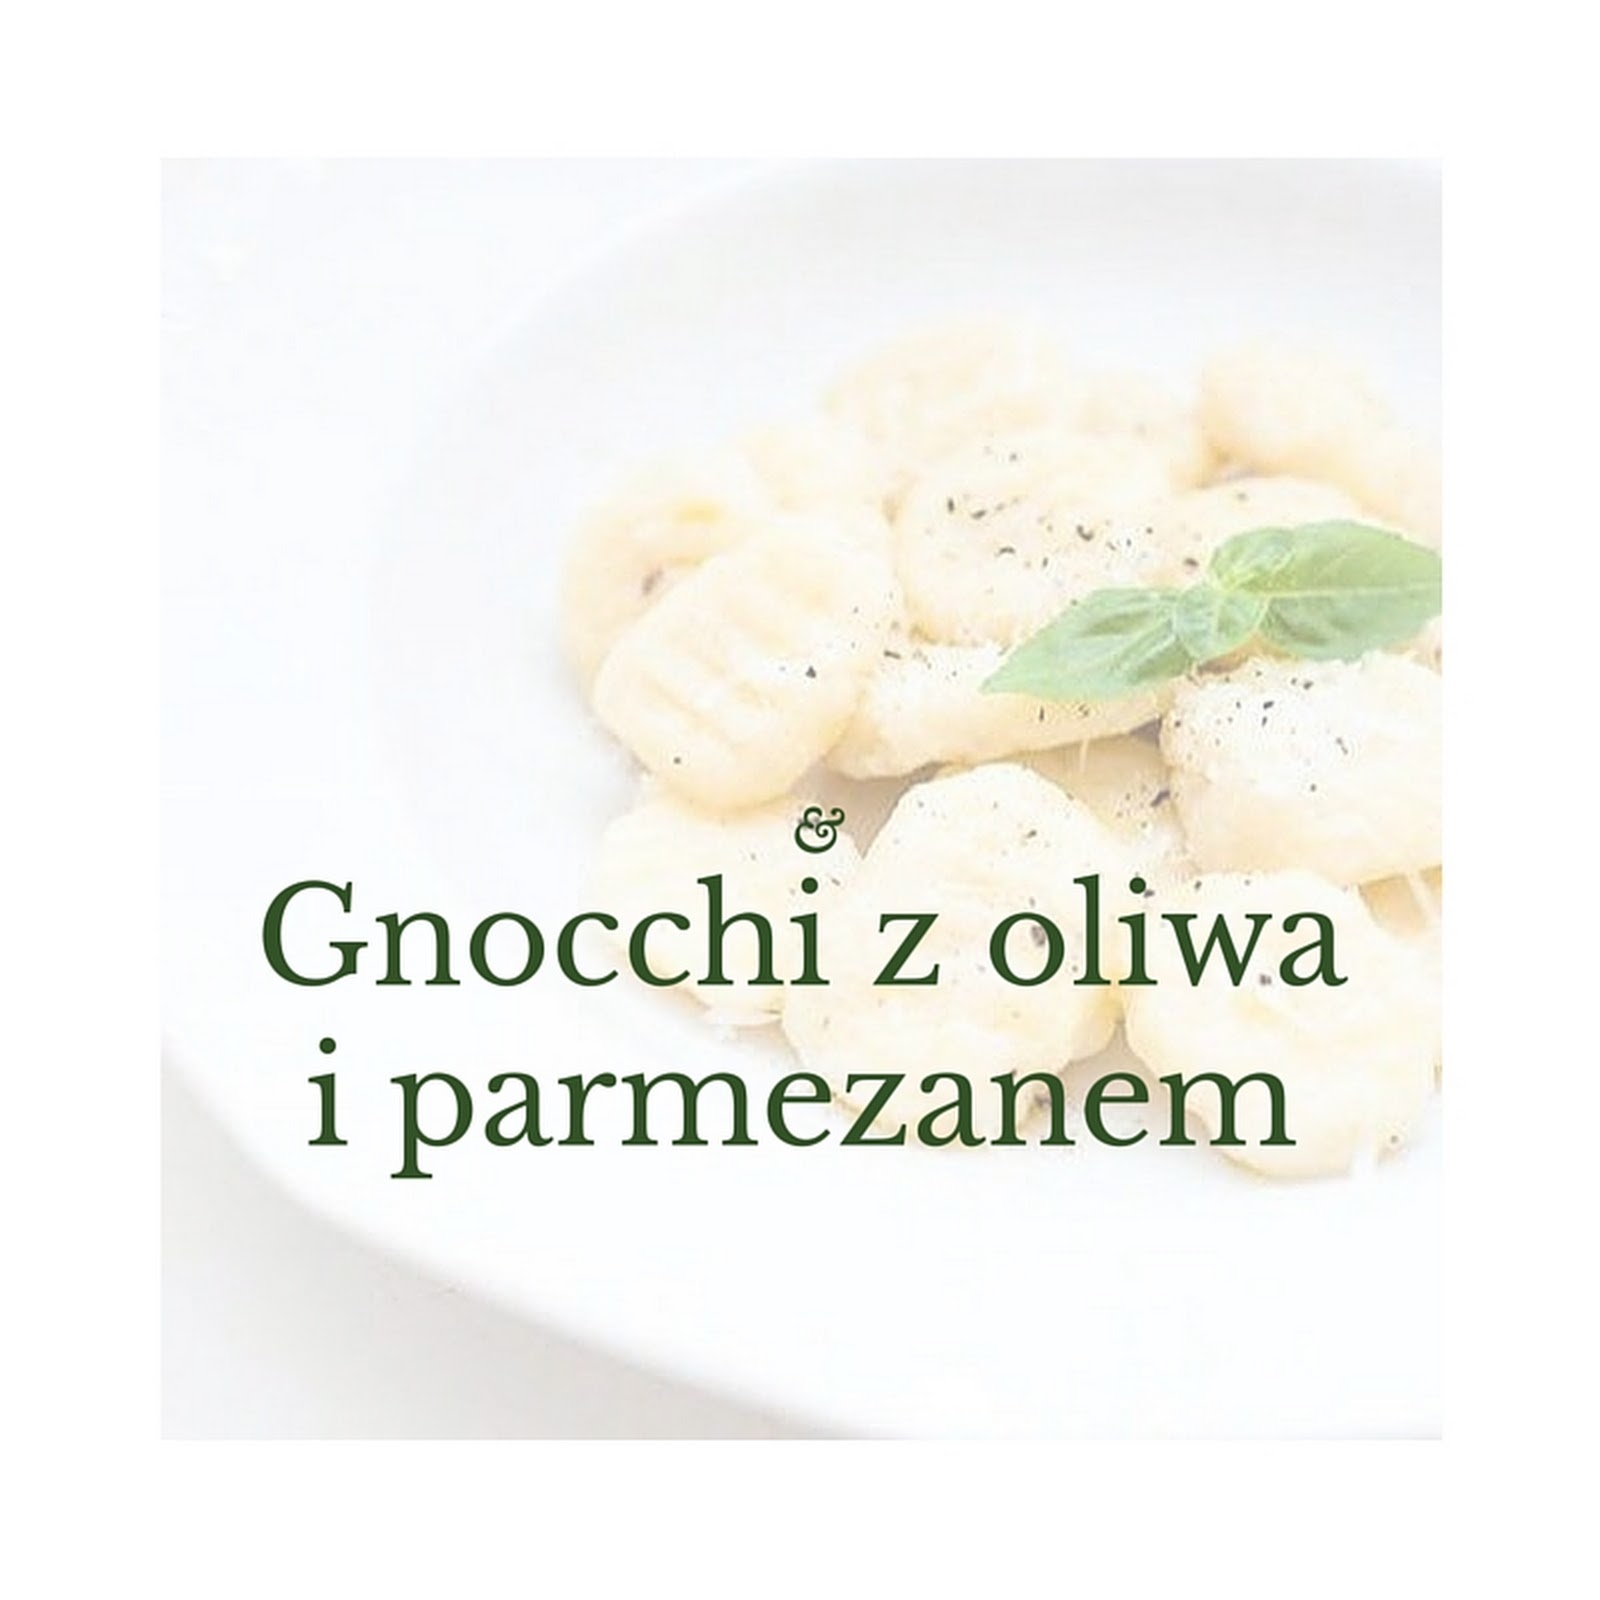 Gnocchi z oliwą i parmezanem